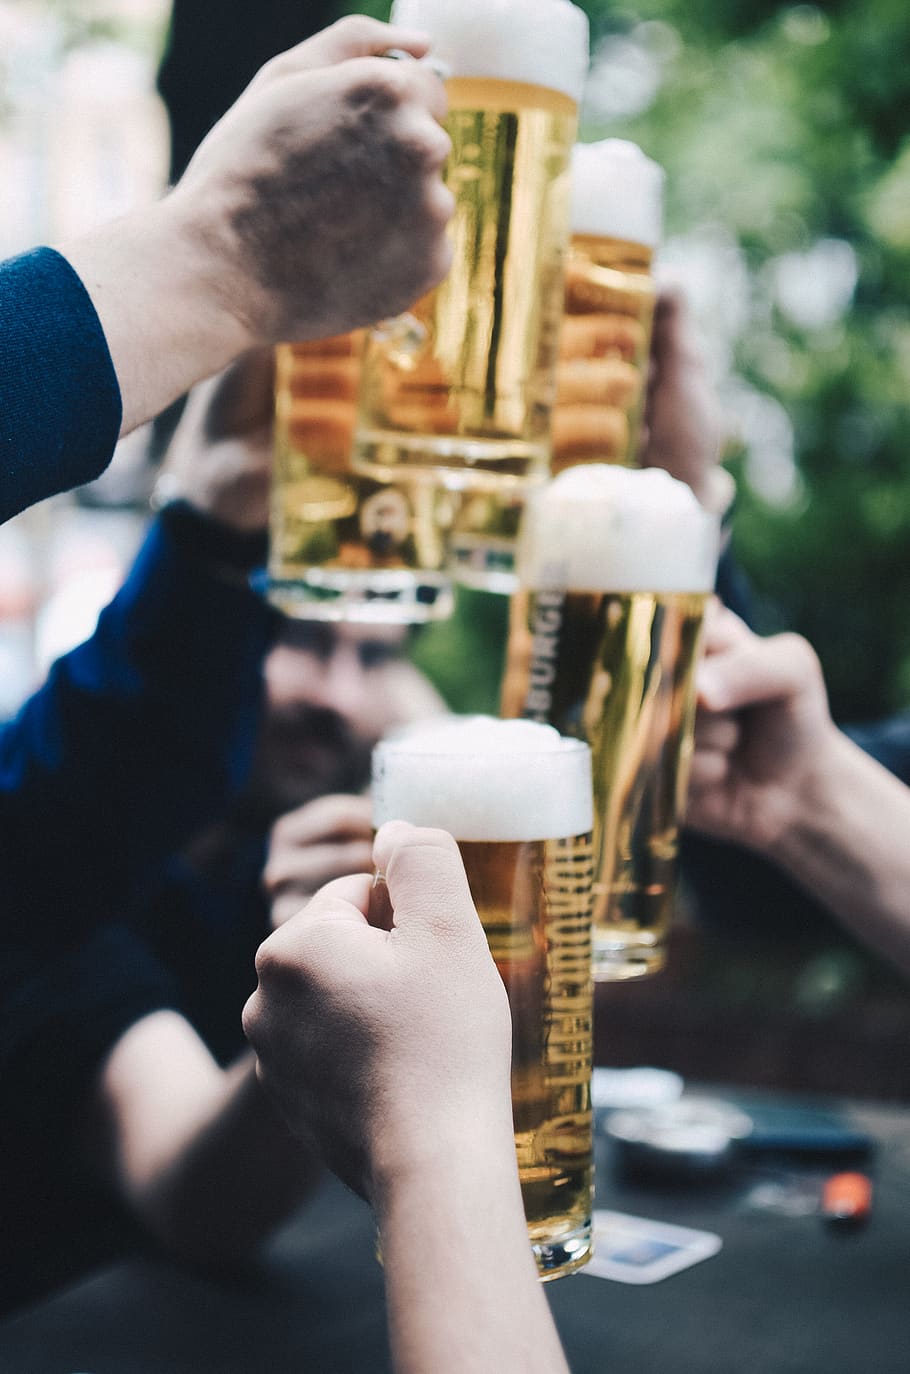 bir, dingin, minuman, tangan, tepuk tangan, pesta, perayaan, bar, tangan manusia, bagian tubuh manusia